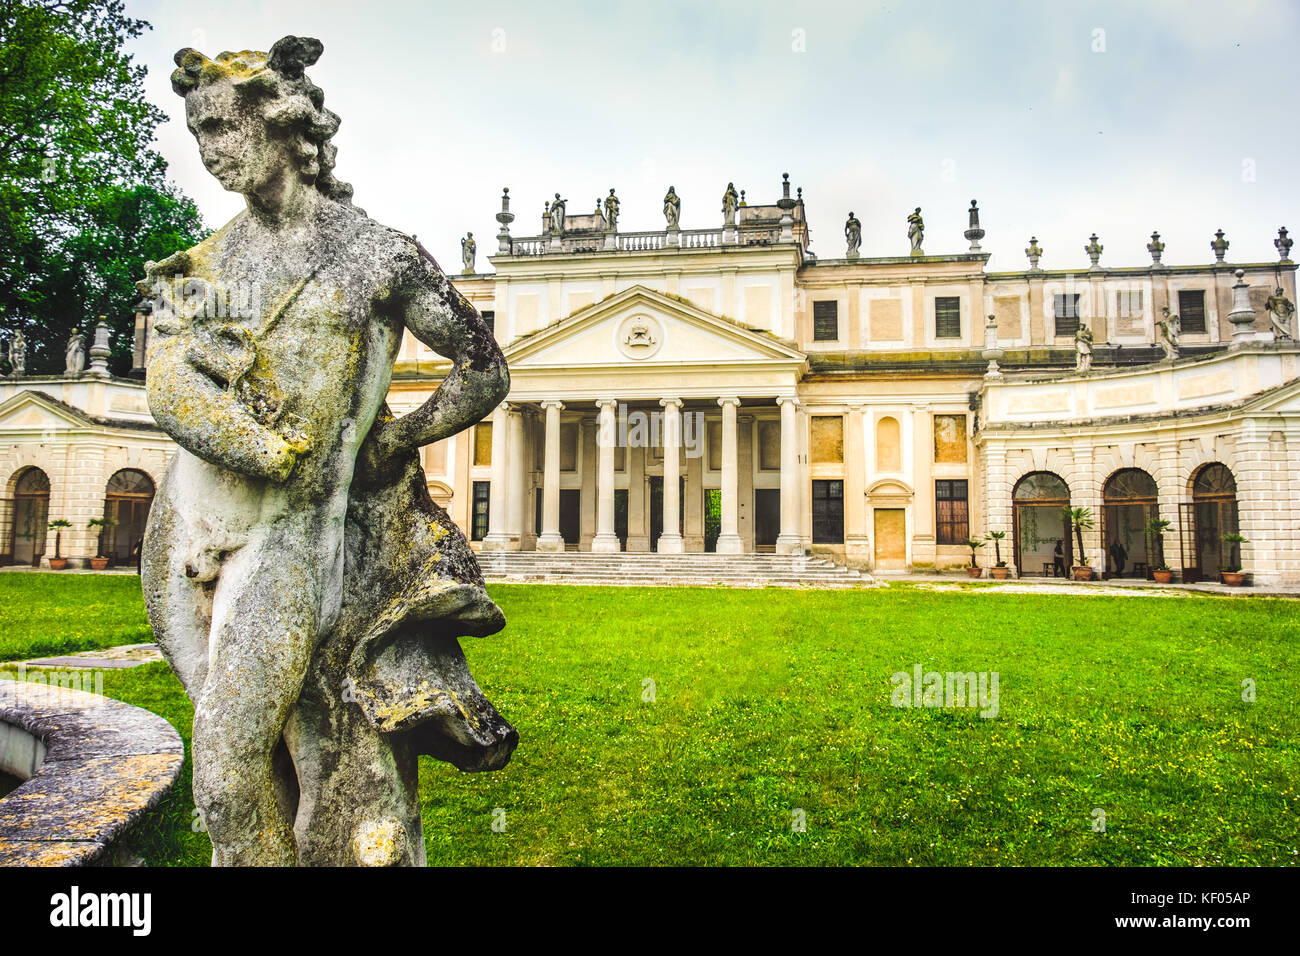 La villa Pisani et statue du musée national du palais de palladio façade - Venise - Italie Banque D'Images